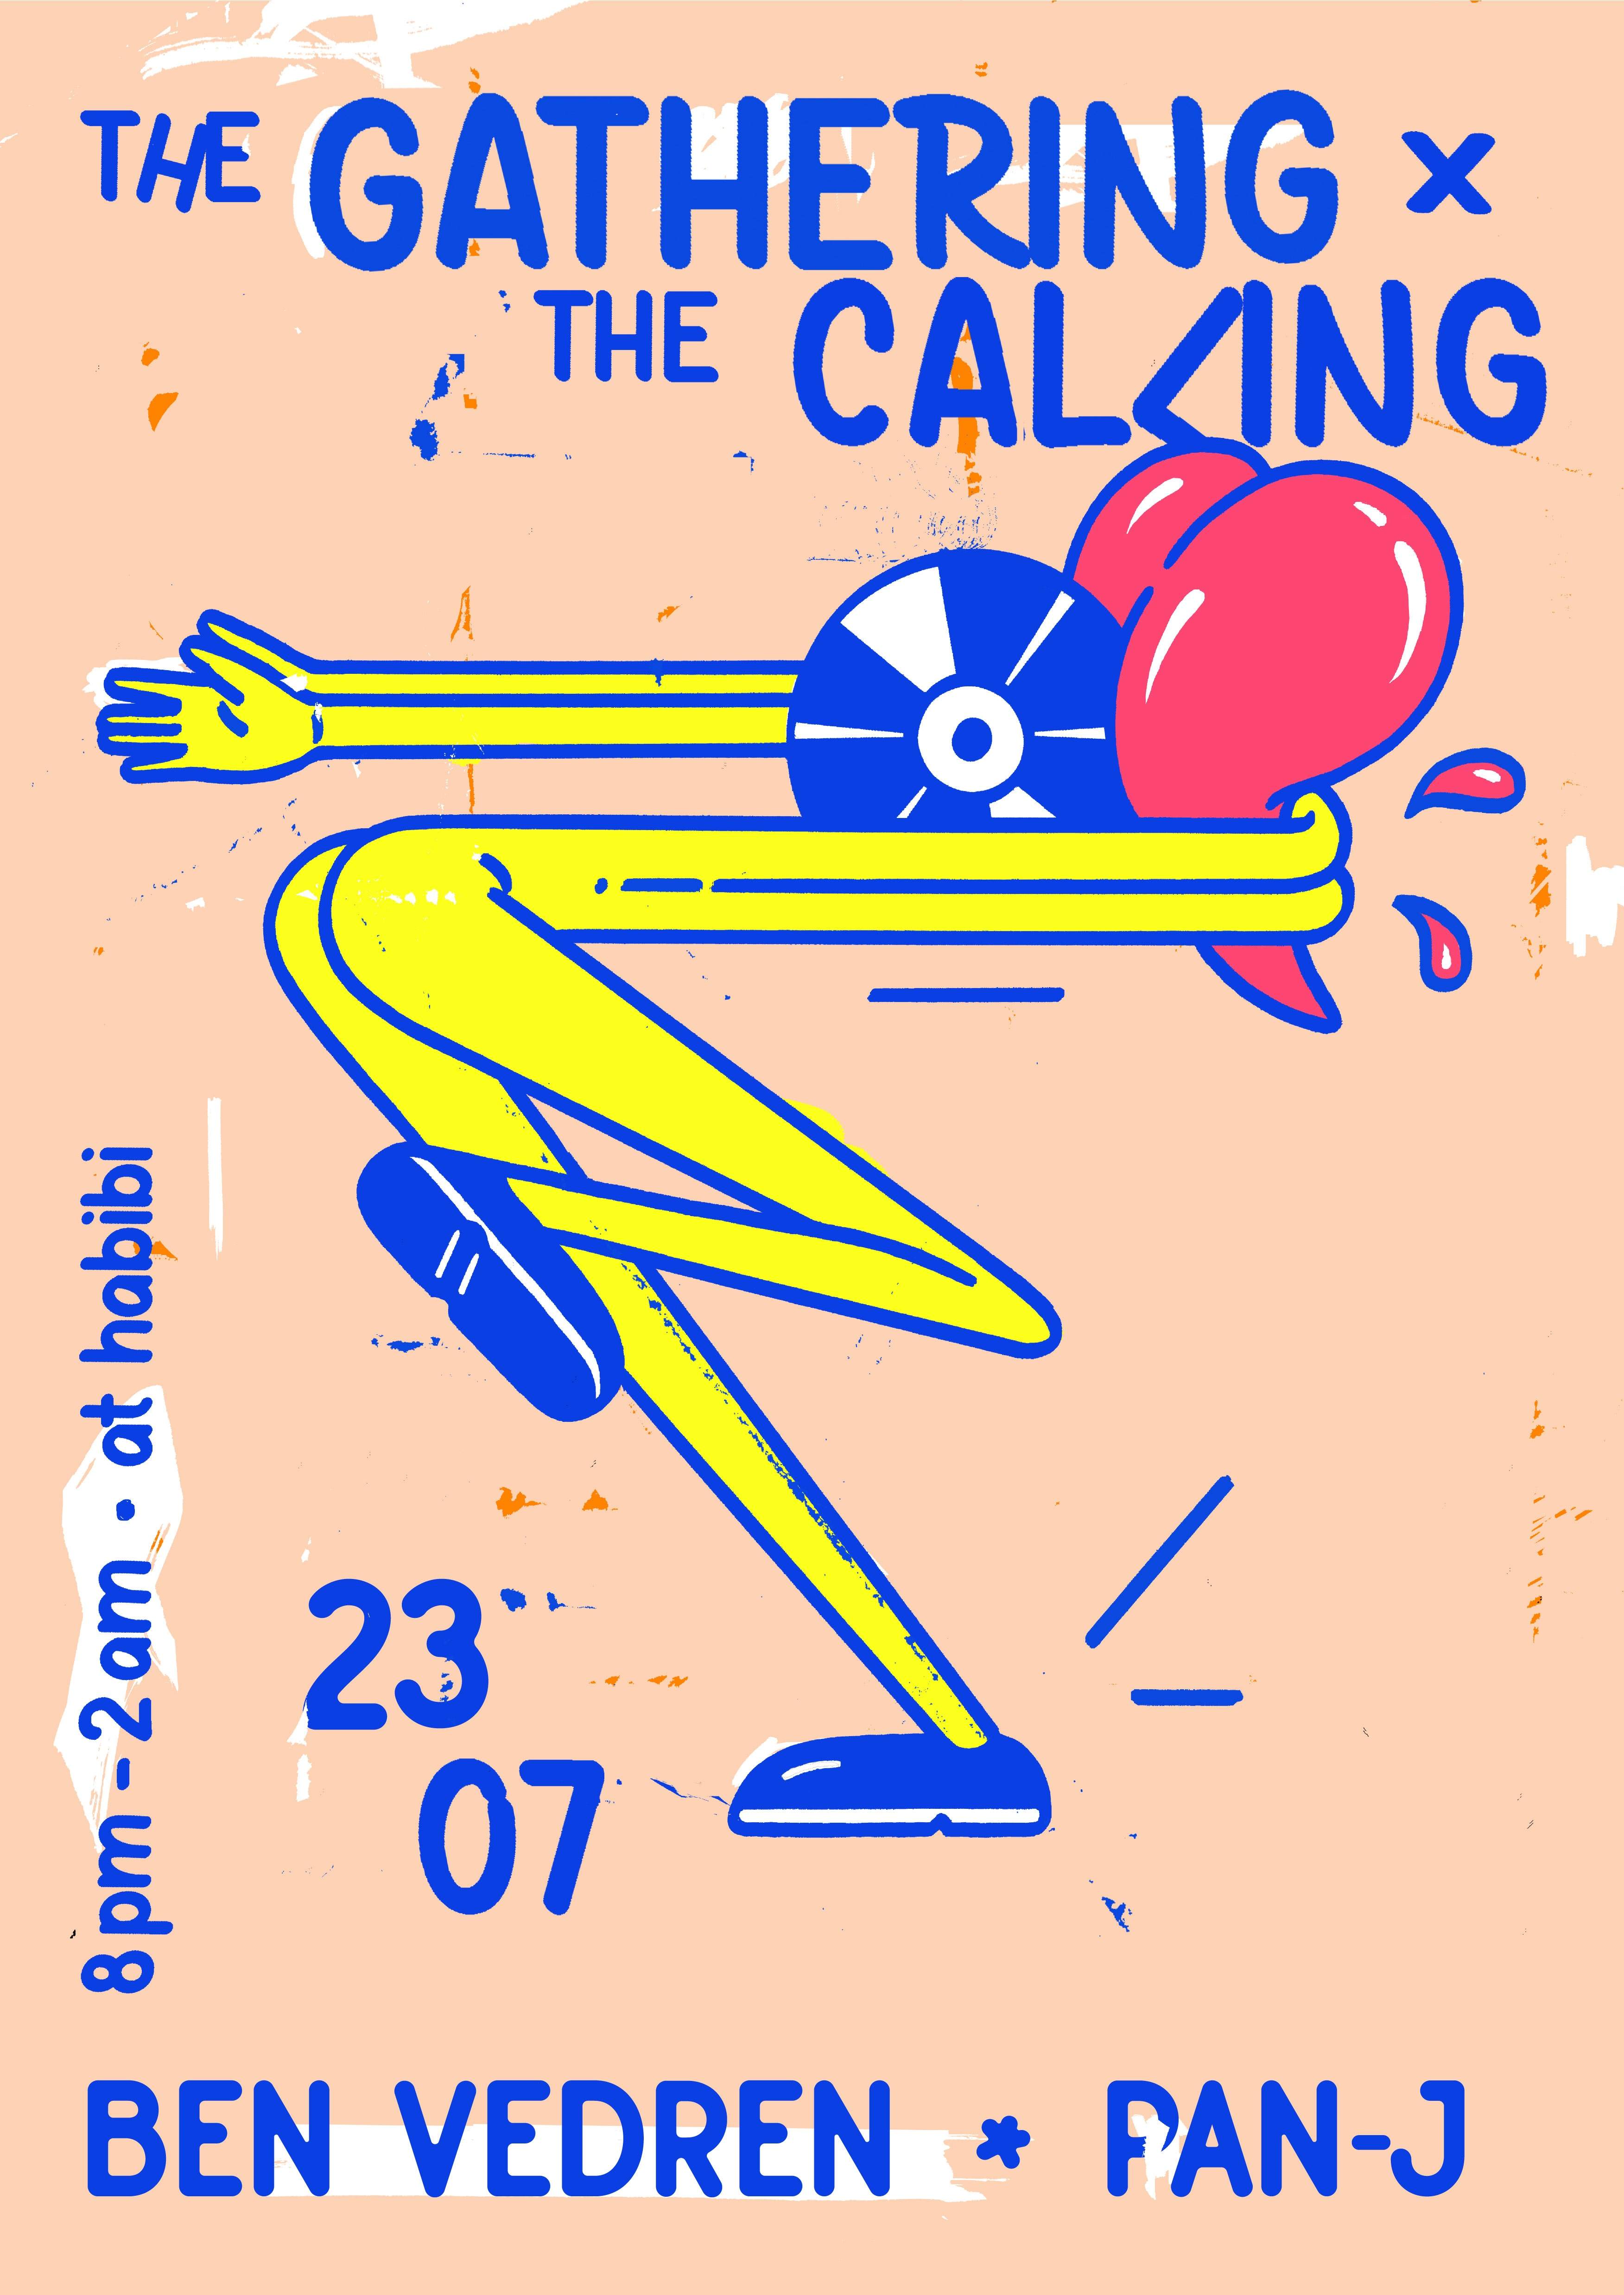 The Gathering & The Calling present Ben Vedren, Pan-J, Formiq, Hedee - フライヤー表